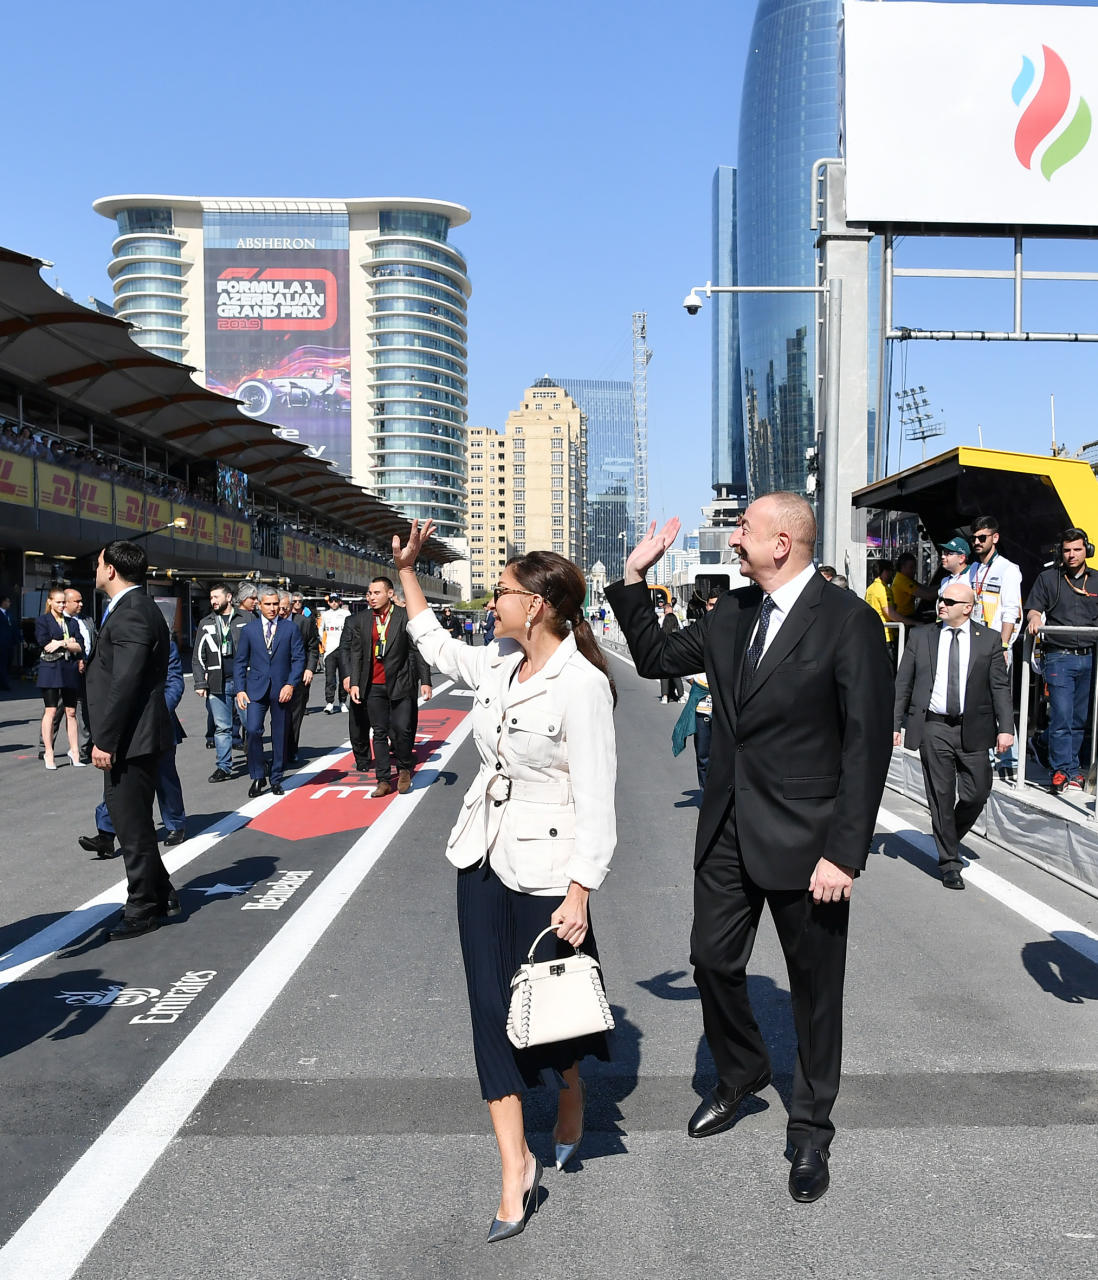 Президент Ильхам Алиев и Первая леди Мехрибан Алиева наблюдали за основной гонкой Гран-при Формулы-1 SOCAR Азербайджан